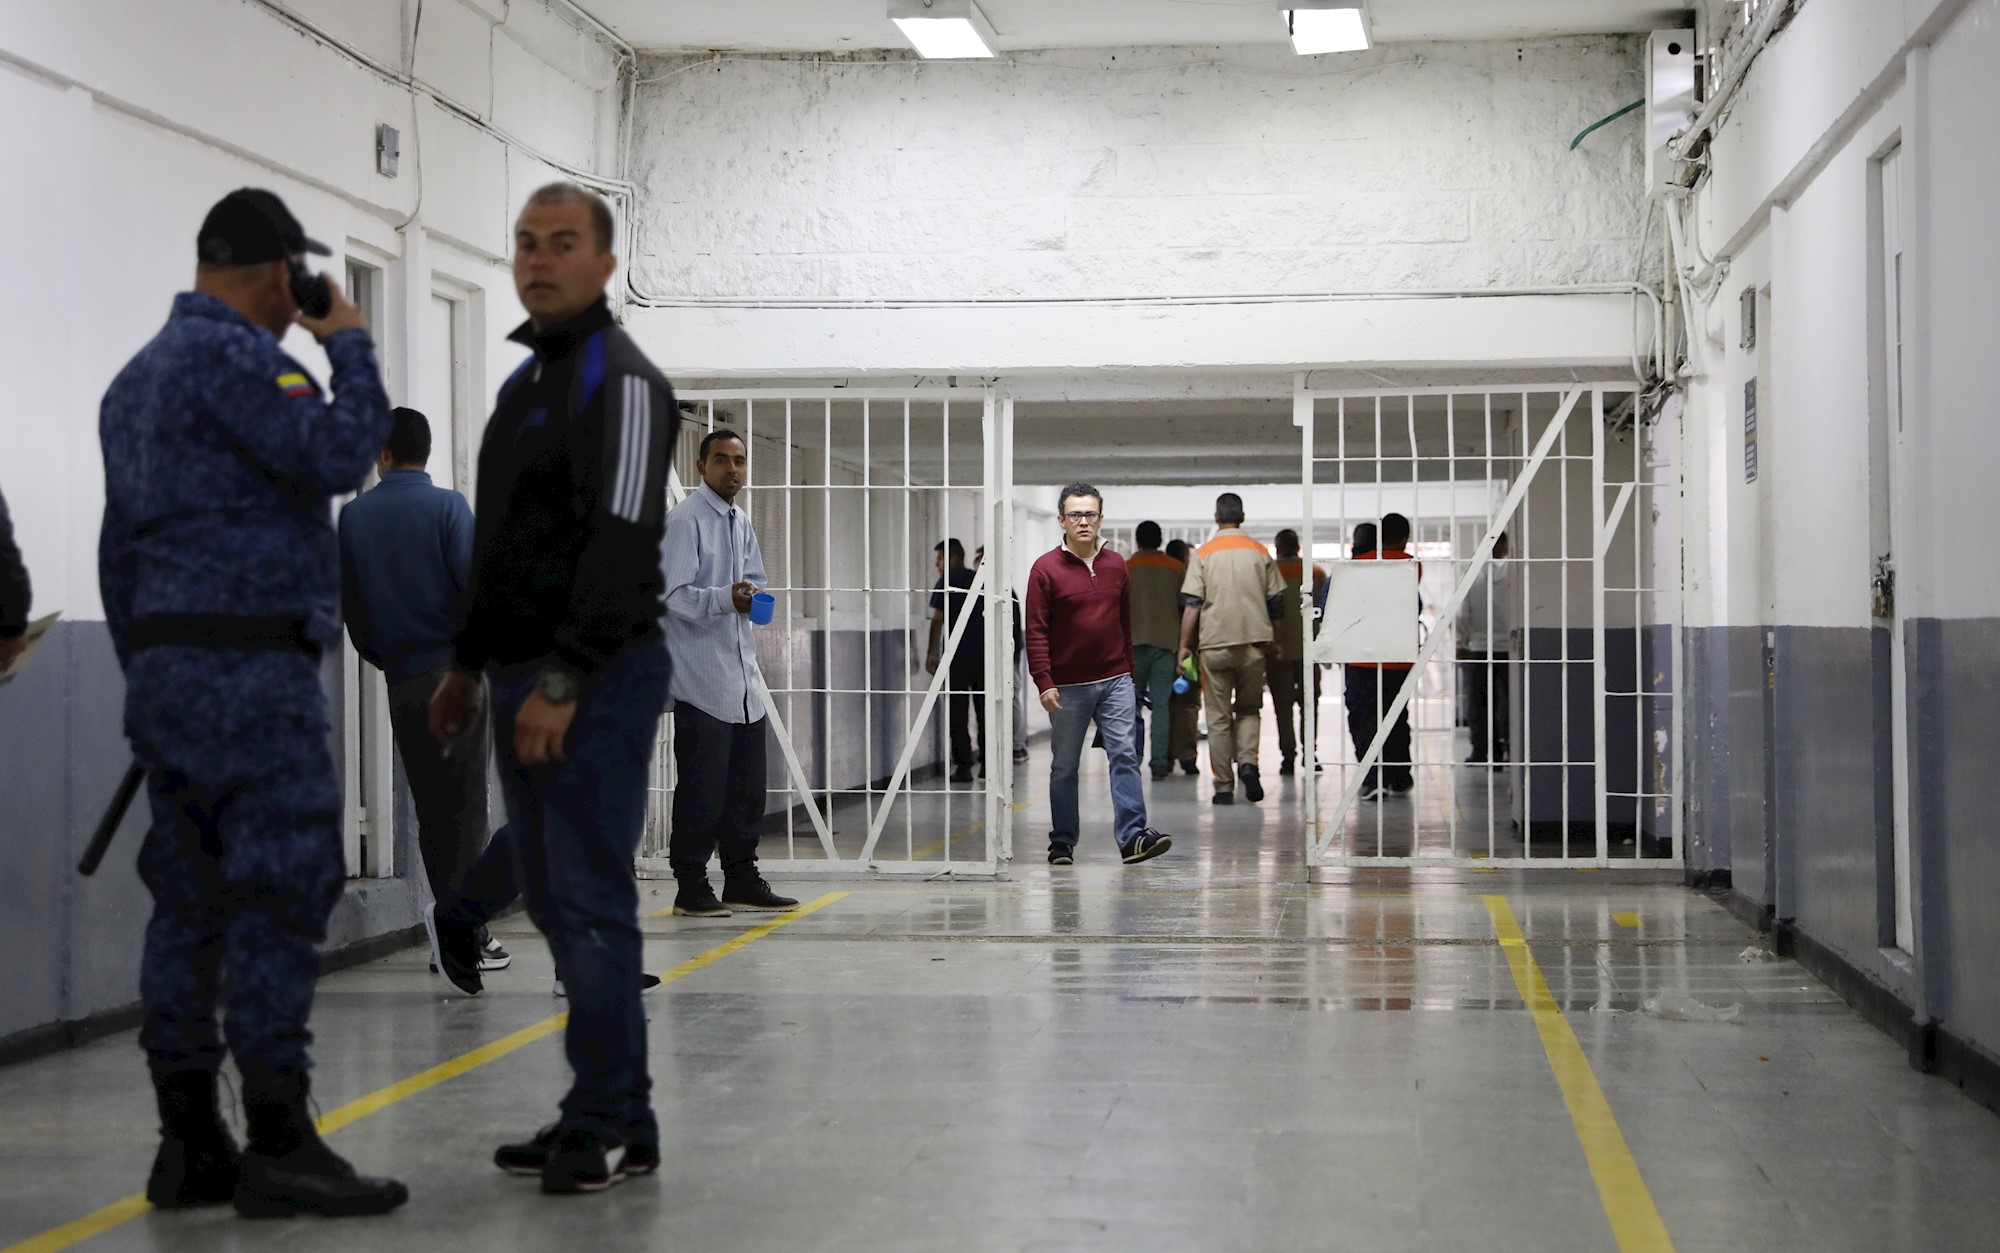 La pesadilla de los extranjeros presos en Colombia como correos de la droga